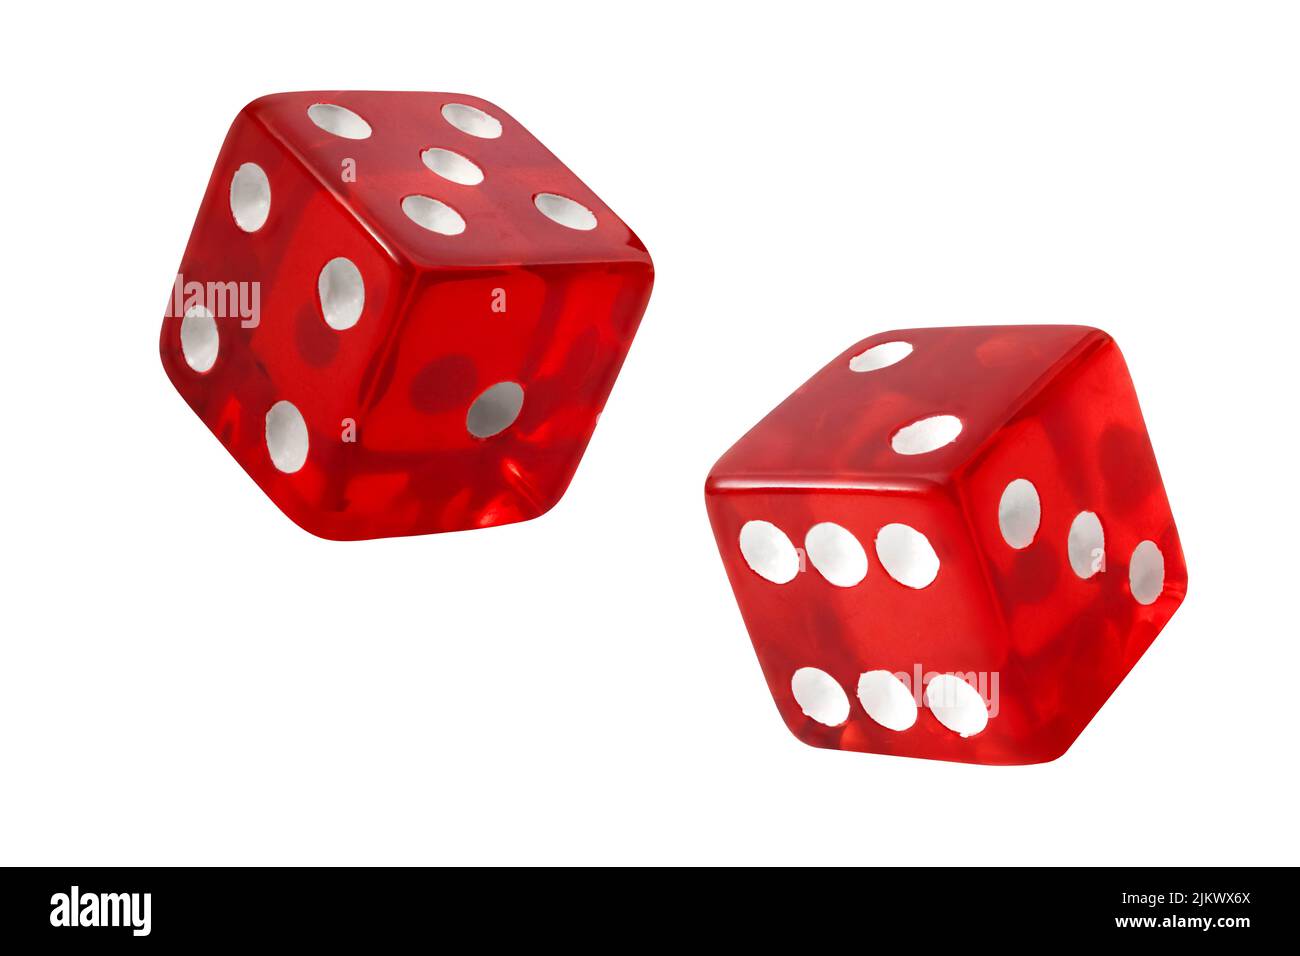 Rojo par de dados de casino rodó un siete con cada dado rodando un cinco y dos aislados sobre fondo blanco con recorte ruta de recorte concepto para los juegos o. Foto de stock